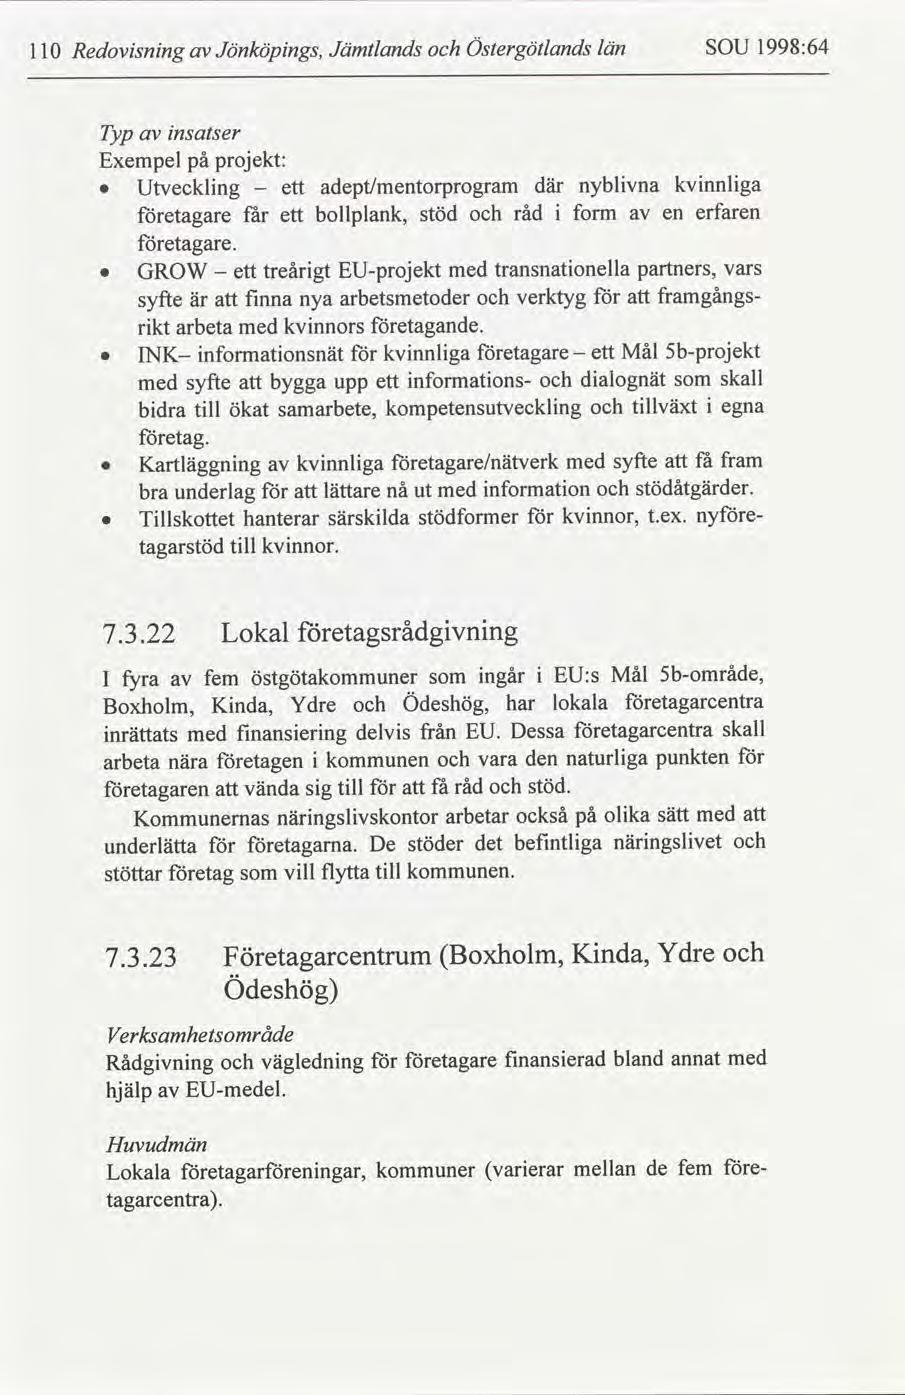 Redovsnng 11 Jönköpngs, Jämtlands Östergötlands län SOU 1998:64 Typ nsatser Exempel på projekt: Utvecklng ett adept/mentorprogram där nyblvna kvnnlga - etagare f ar ett bollplank, stöd råd form en